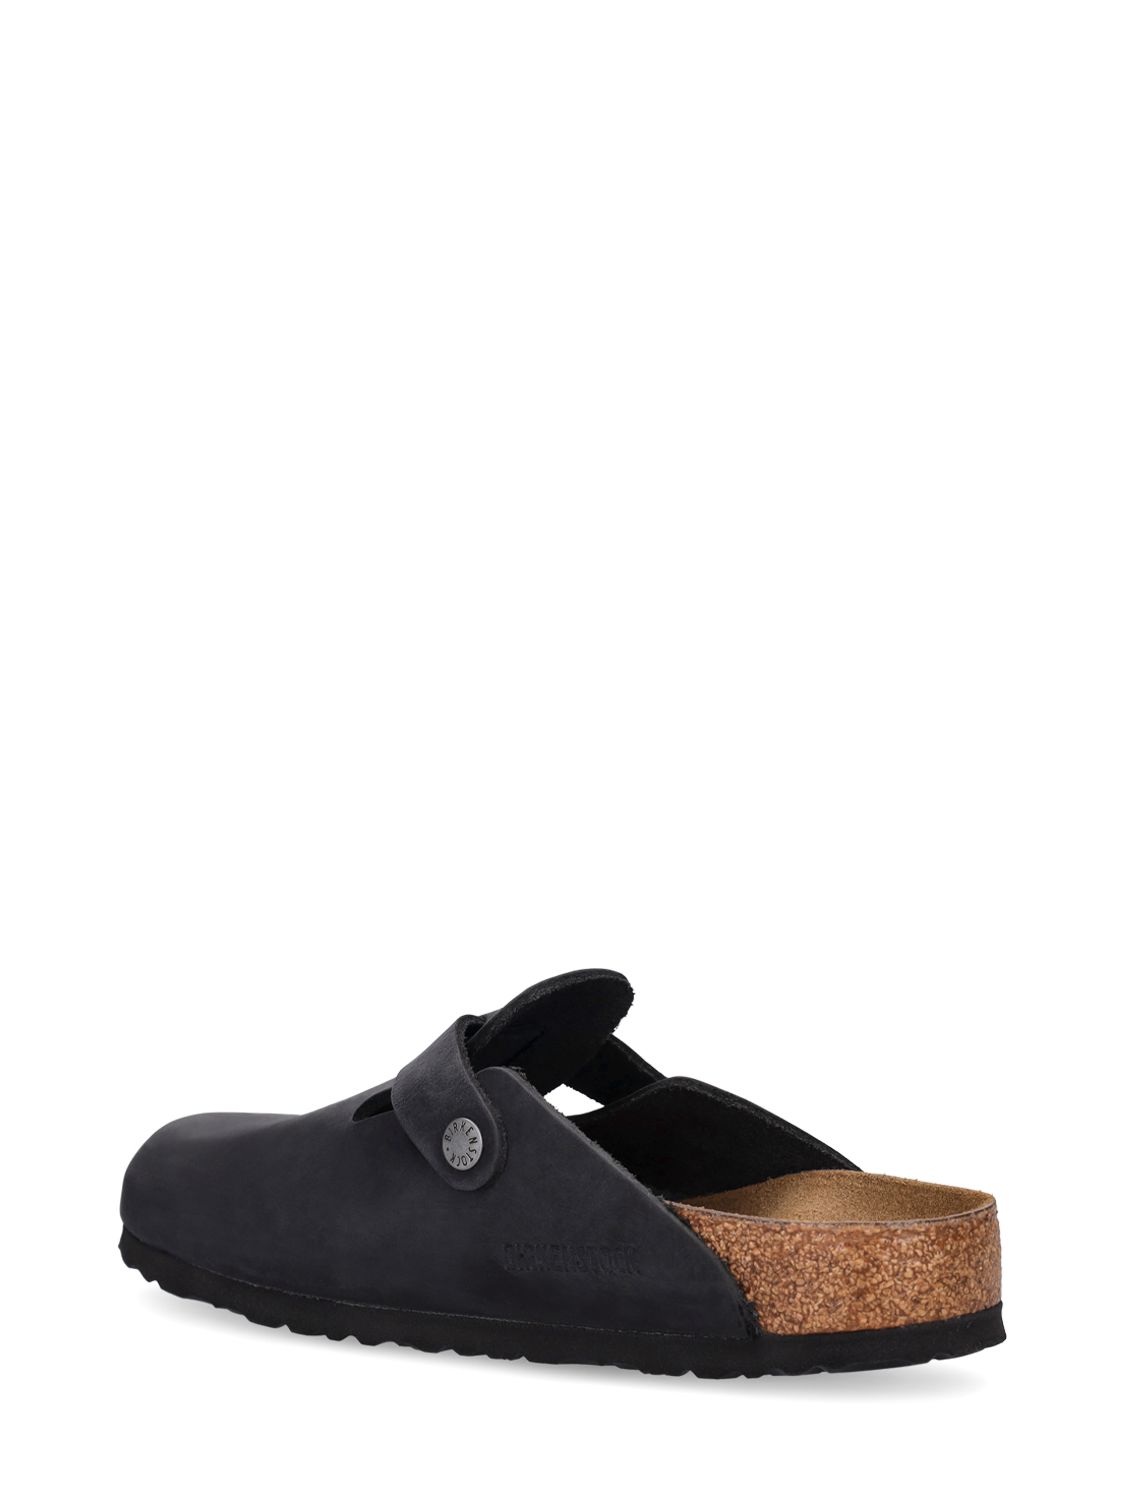 Shop Birkenstock Boston Waxy Leather Sandals In Black